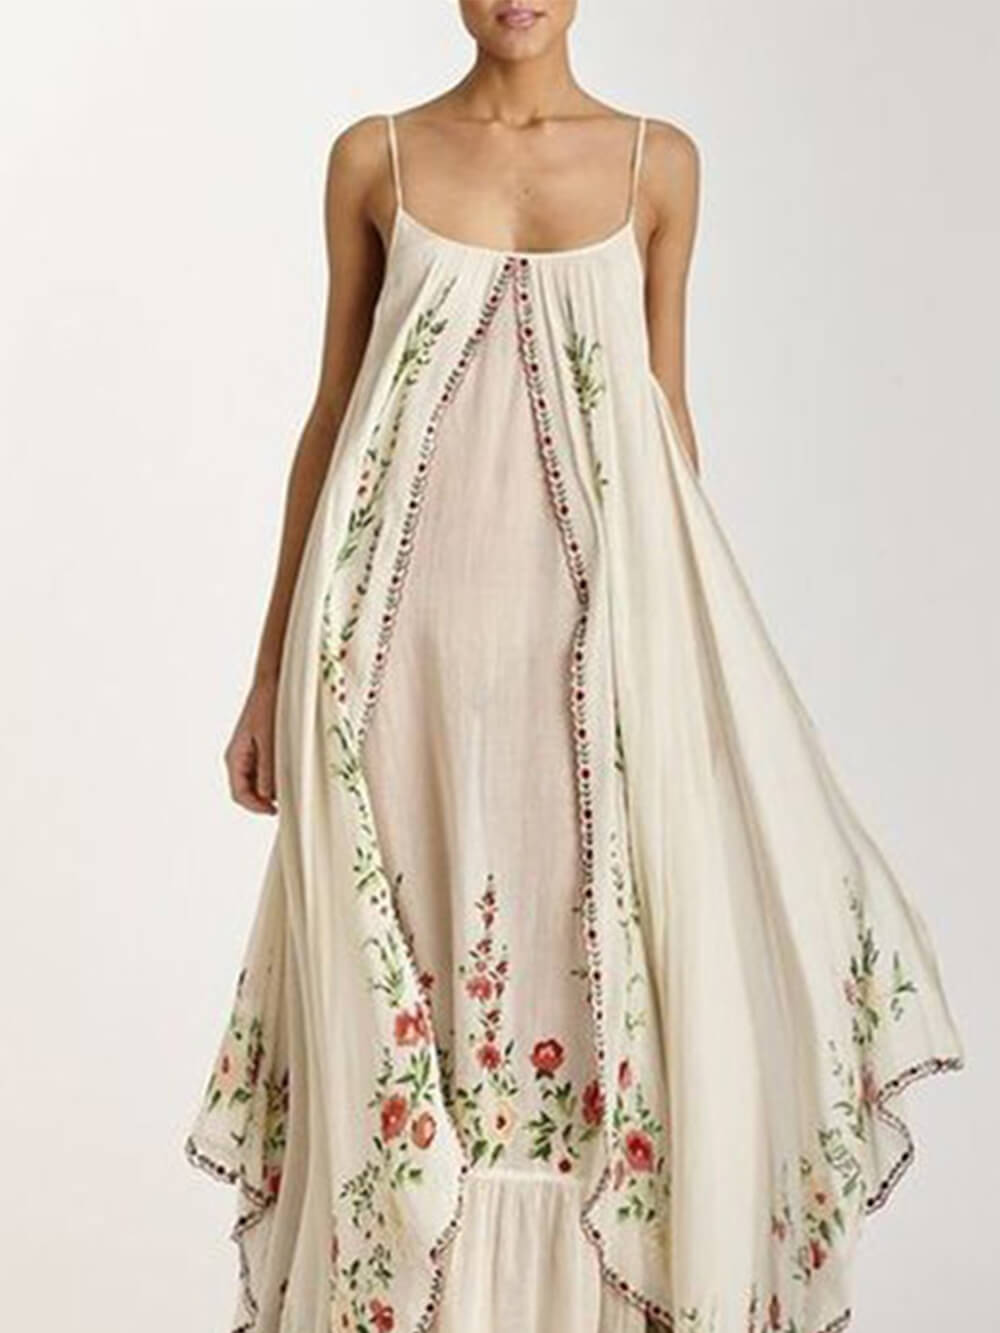 Bedrucktes, schwingendes, lockeres langes Kleid mit Rundhalsausschnitt